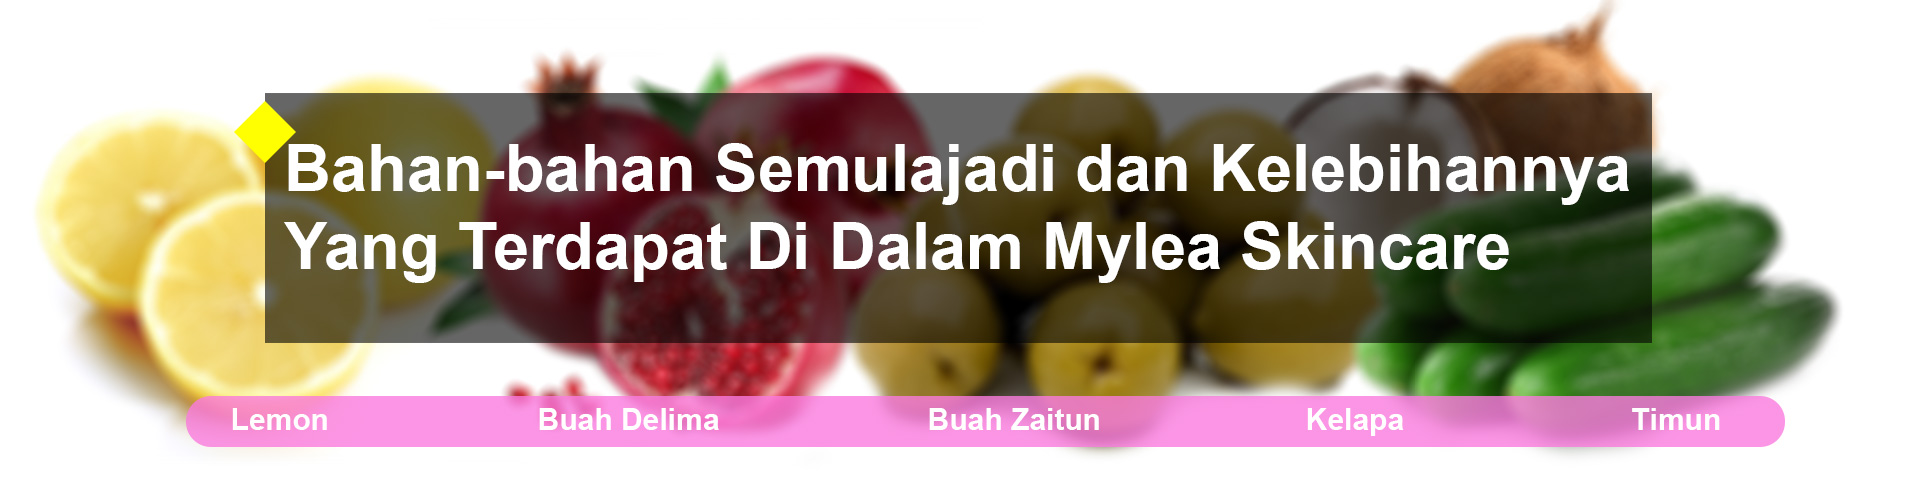 Mylea_Bahan_Semulajadi